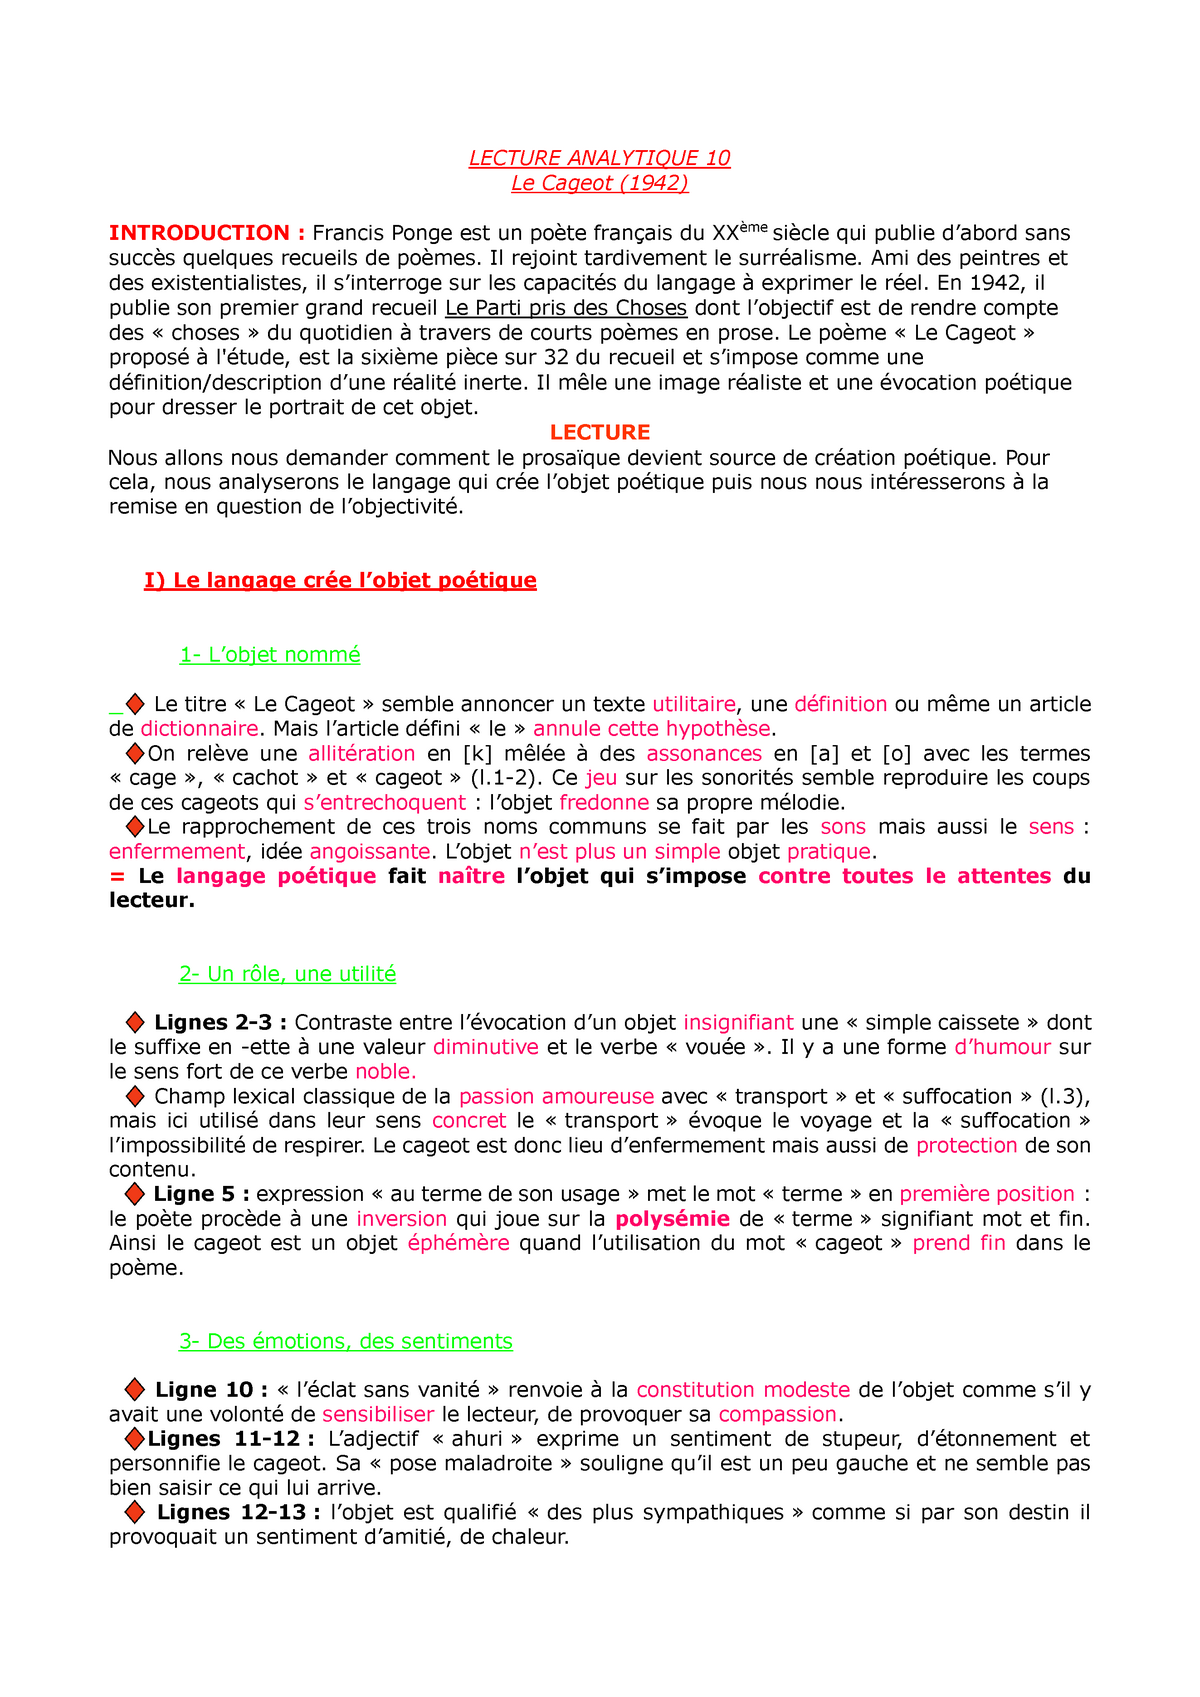 Le Parti Pris Des Choses Fiche De Lecture Lecture Analytique 10 Le Cageot (1942) - LECTURE ANALYTIQUE 10 Le Cageot  (1942) INTRODUCTION : - Studocu